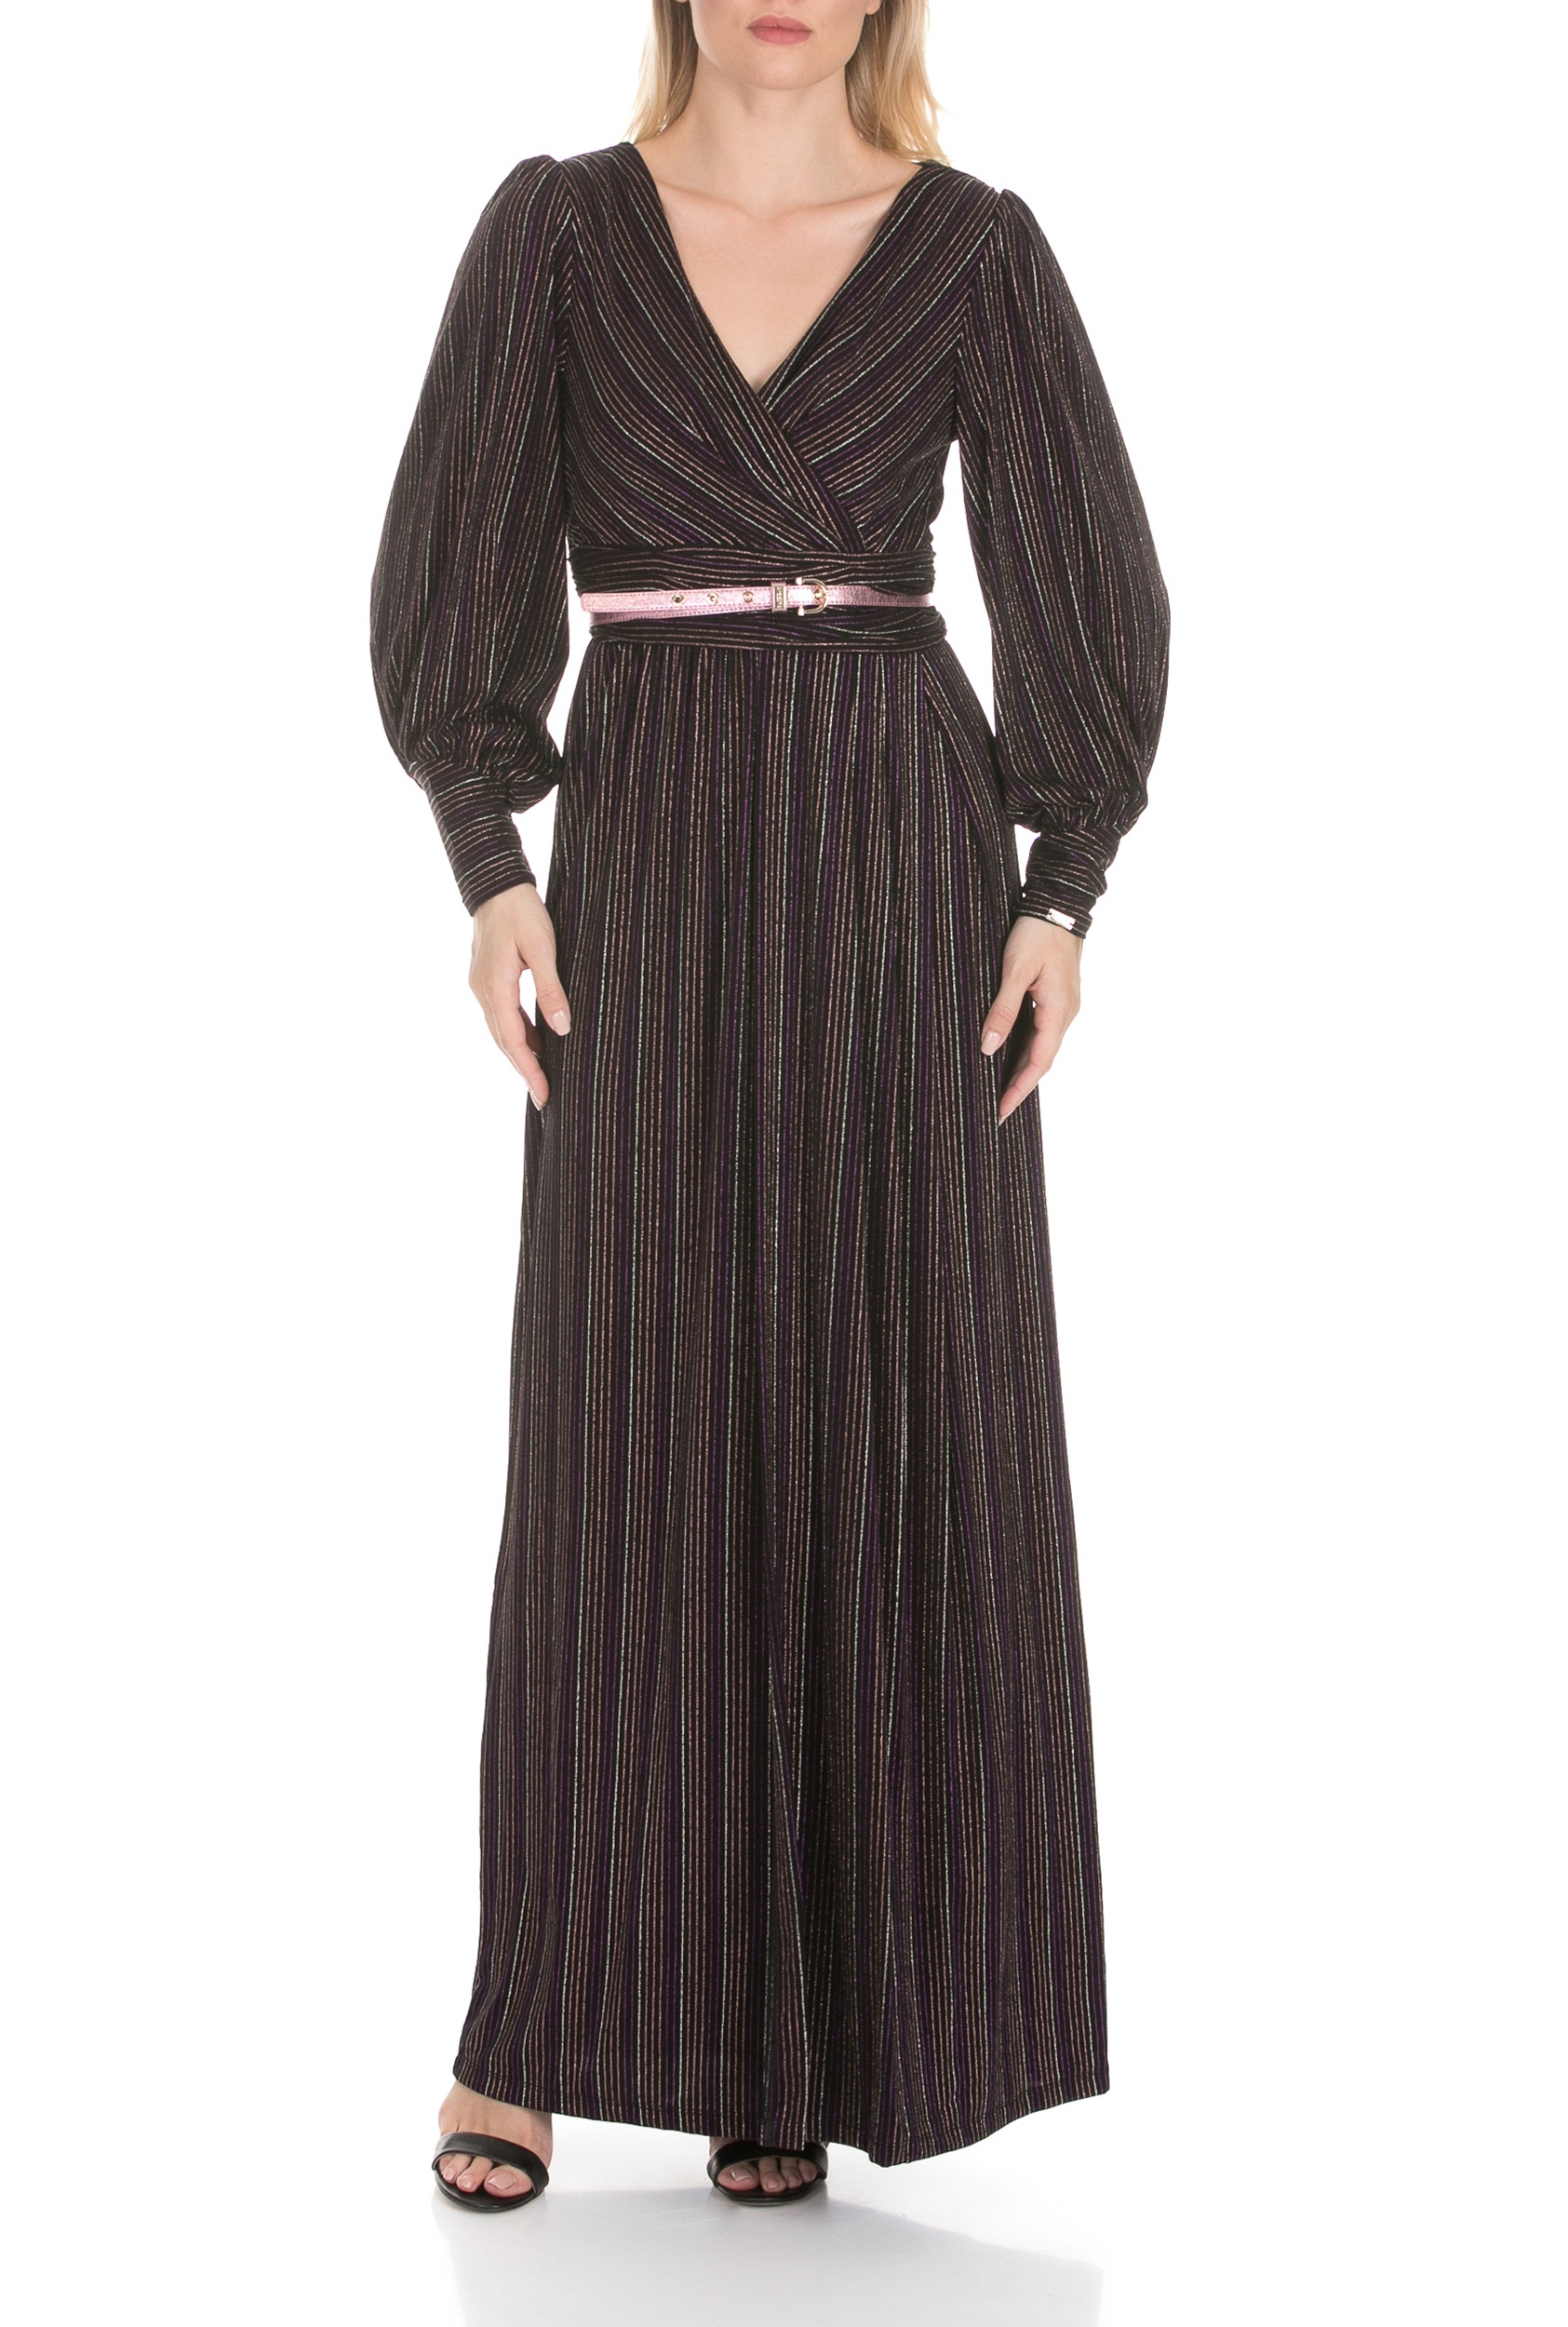 NENETTE – Γυναικείο μάξι φόρεμα NENETTE ALCIDE ριγέ